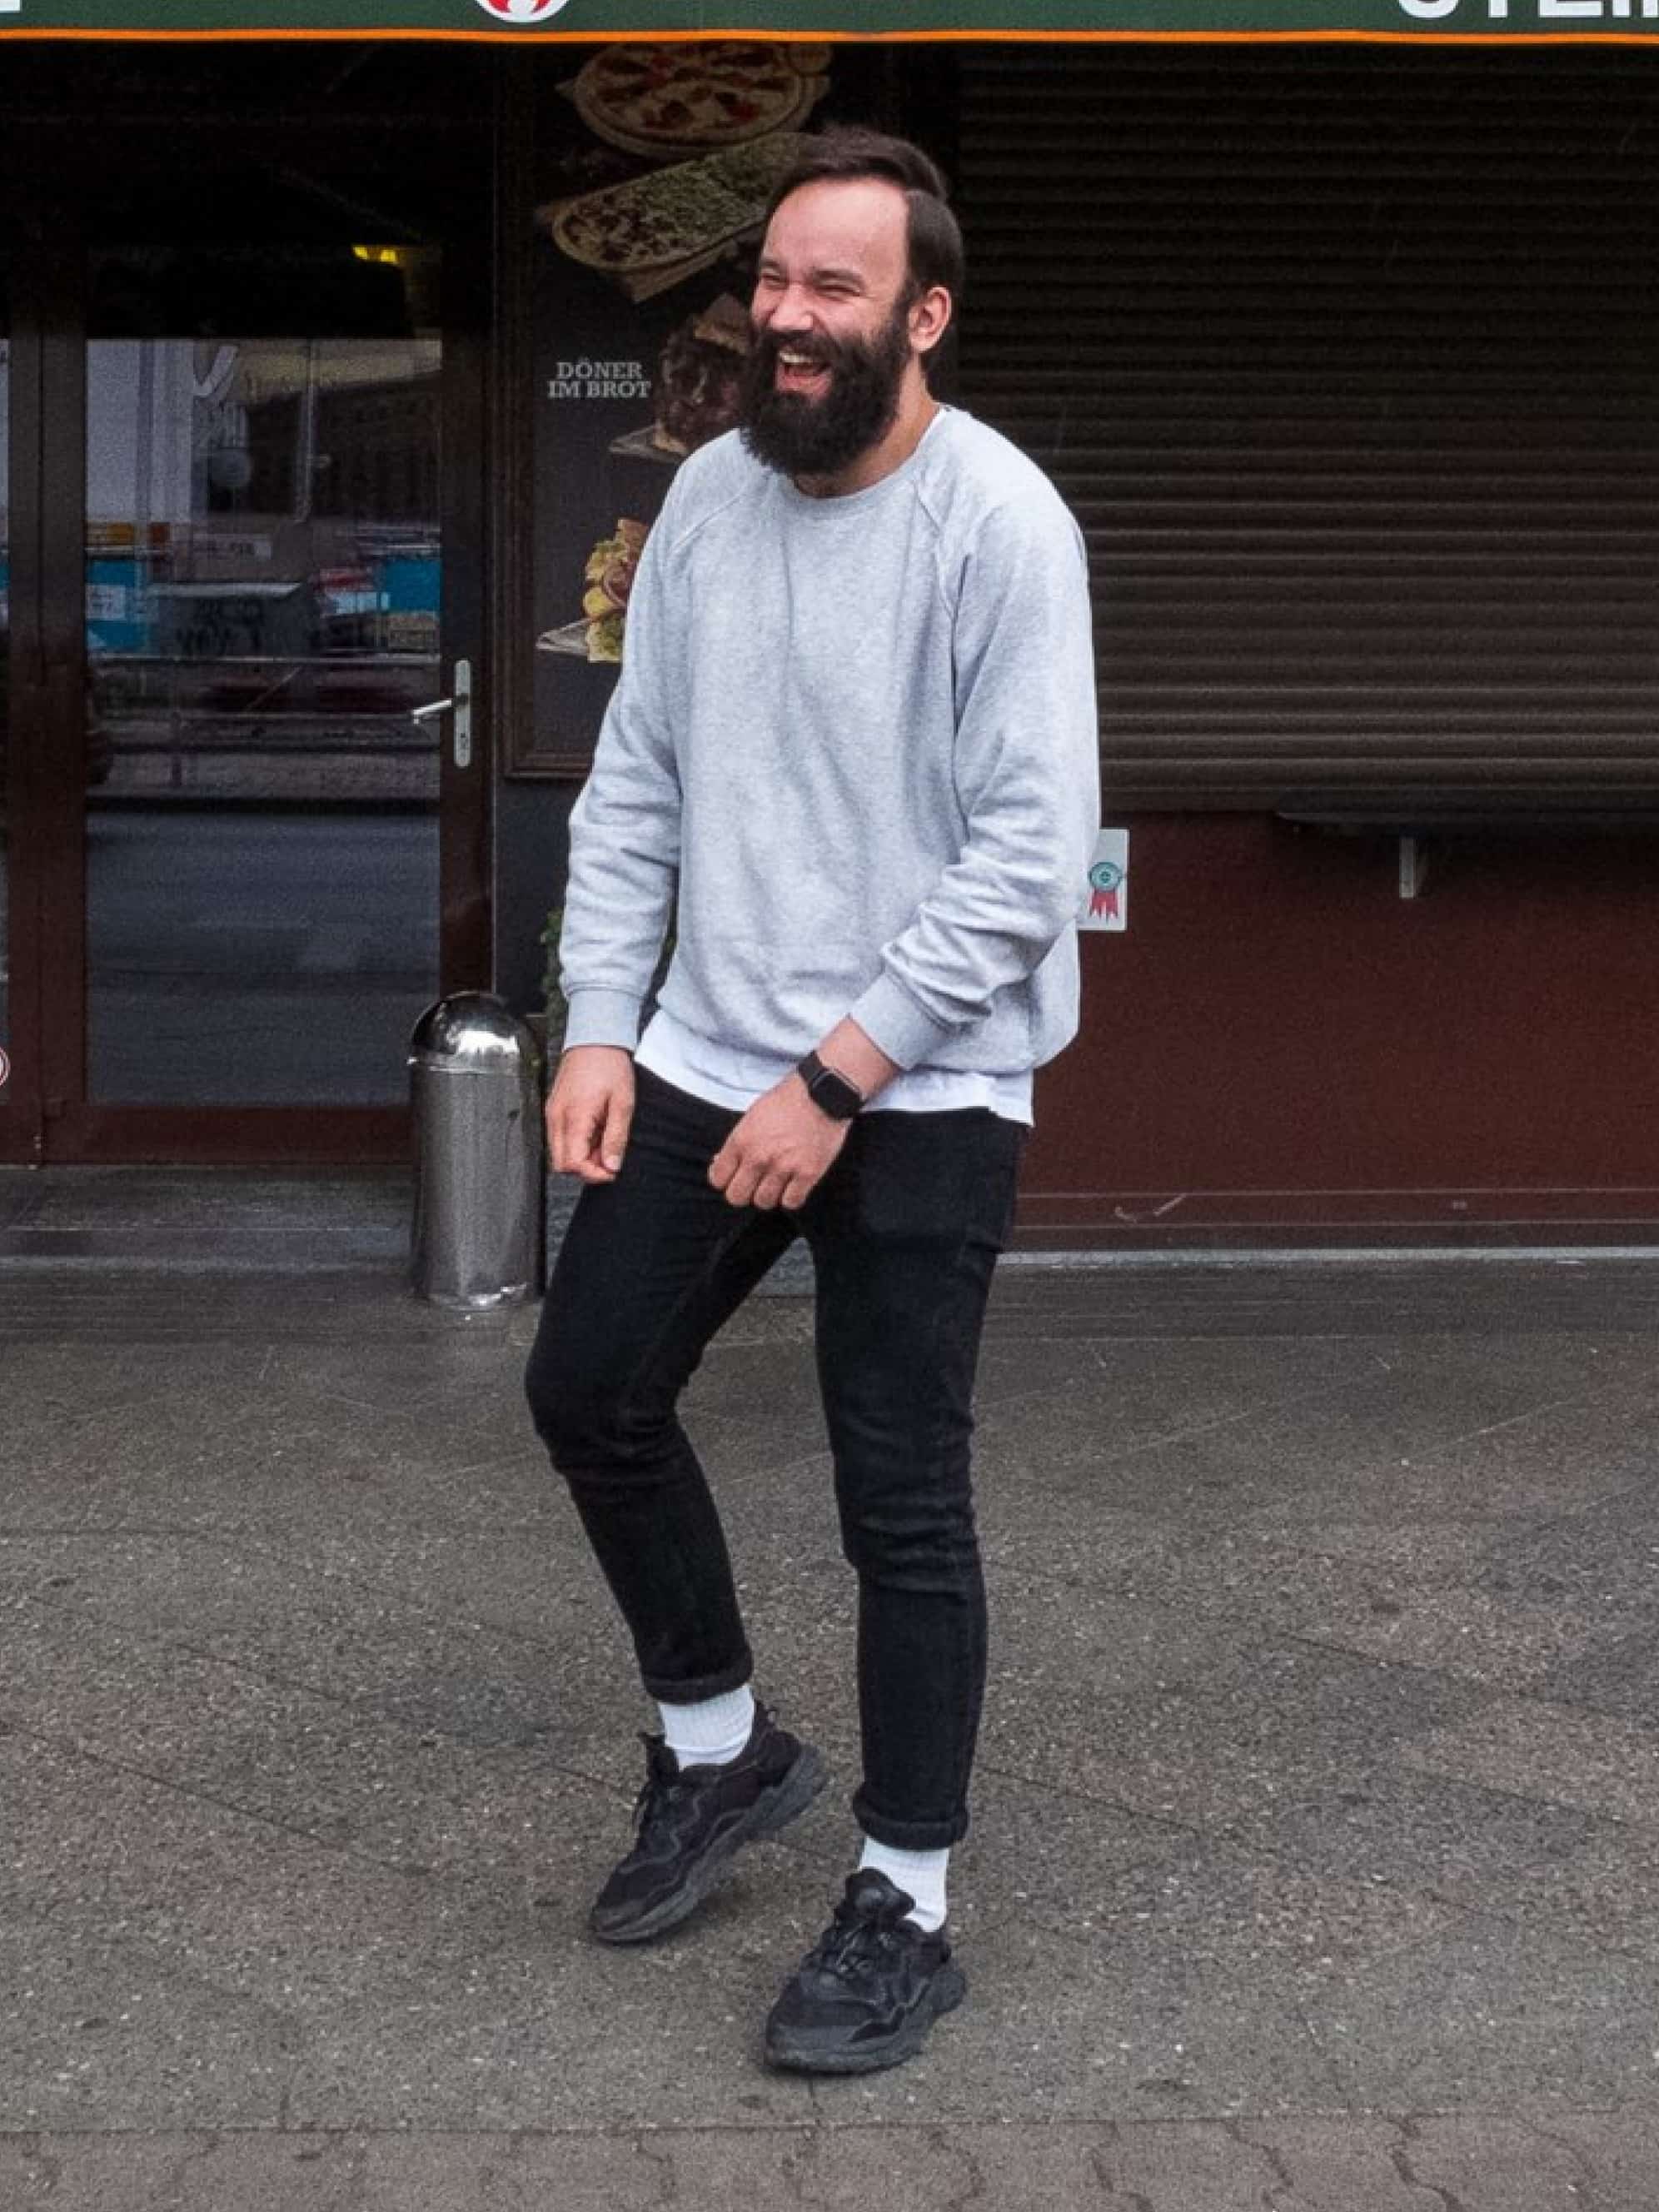 Ein Mann in grauem Pullover steht auf dem Gehweg vor einem Geschäft und lacht.